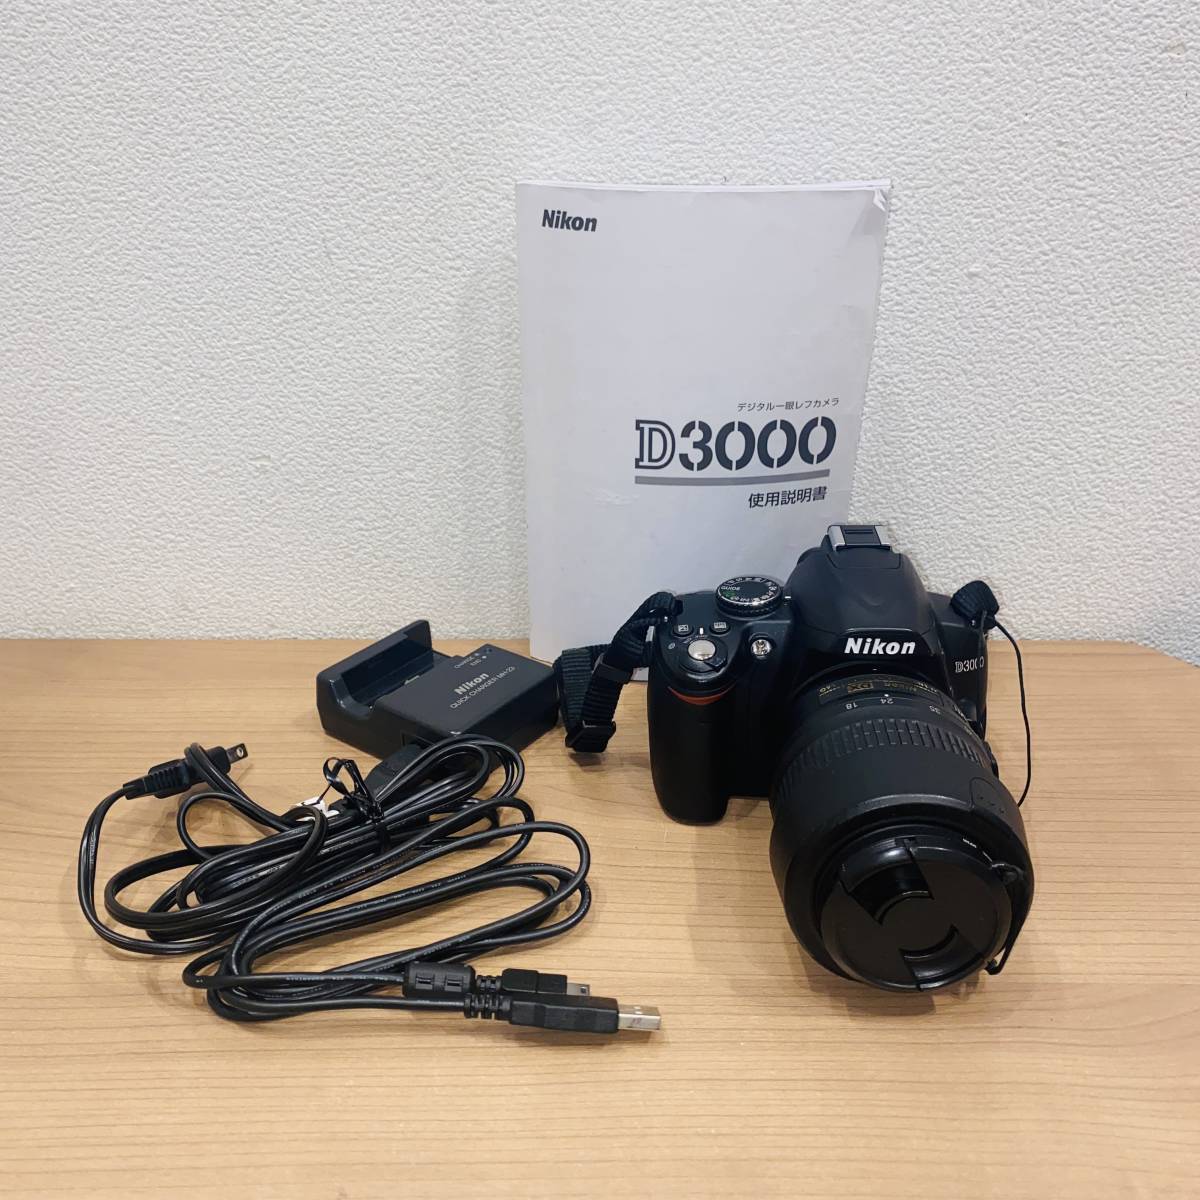 値引き 信託 D3000 デジタル一眼レフカメラ レンズAF-S DX 18-55mm 1:3.5-5.6G VR 33555 mojpit.pl mojpit.pl